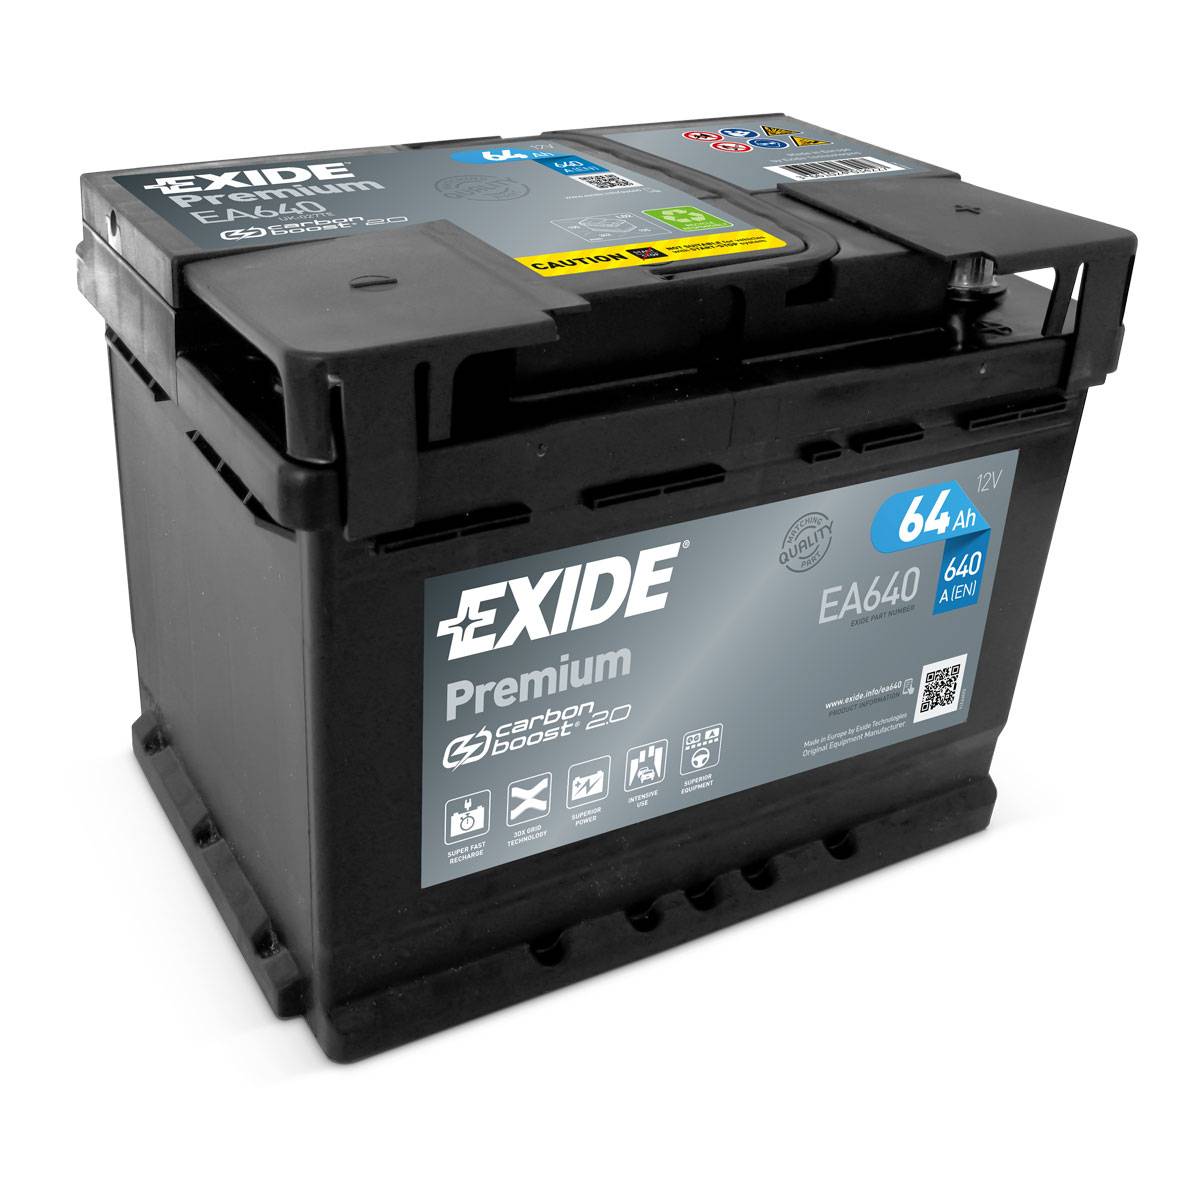 Batteria per auto Exide EA640 Premium Carbon Boost 12V 64Ah 640A